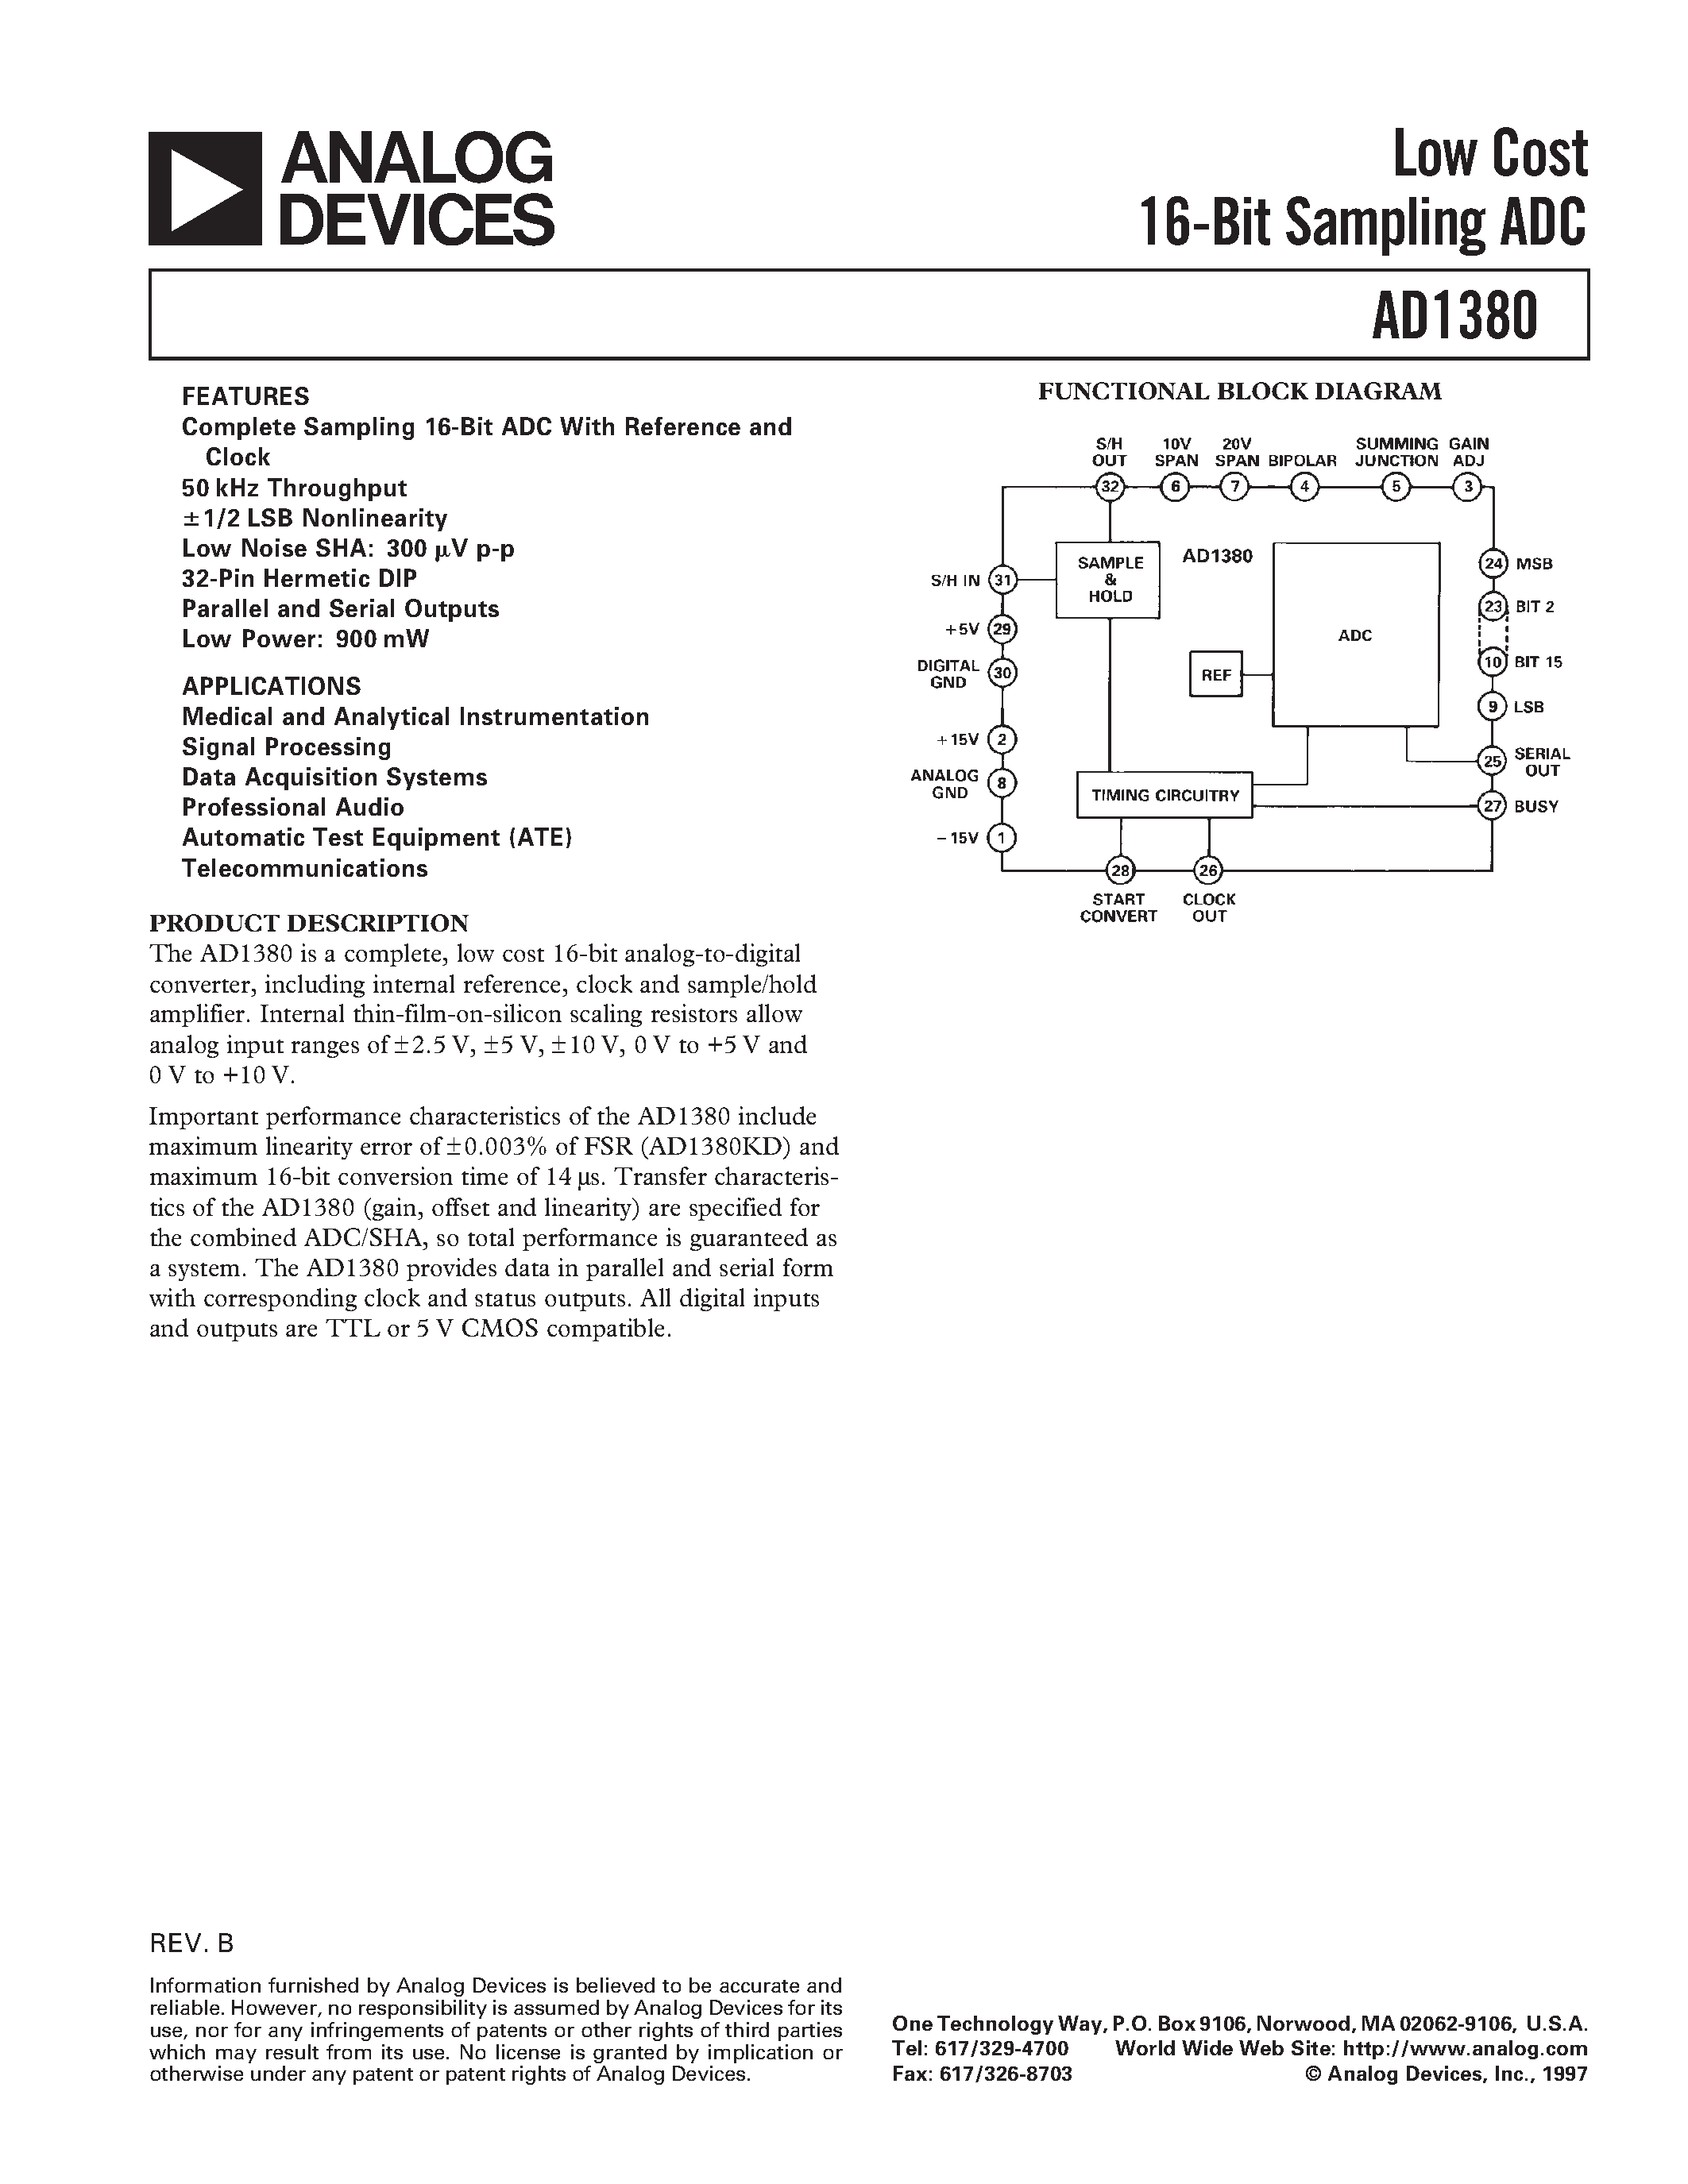 Даташит AD1380KD - Low Cost 16-Bit Sampling ADC страница 1